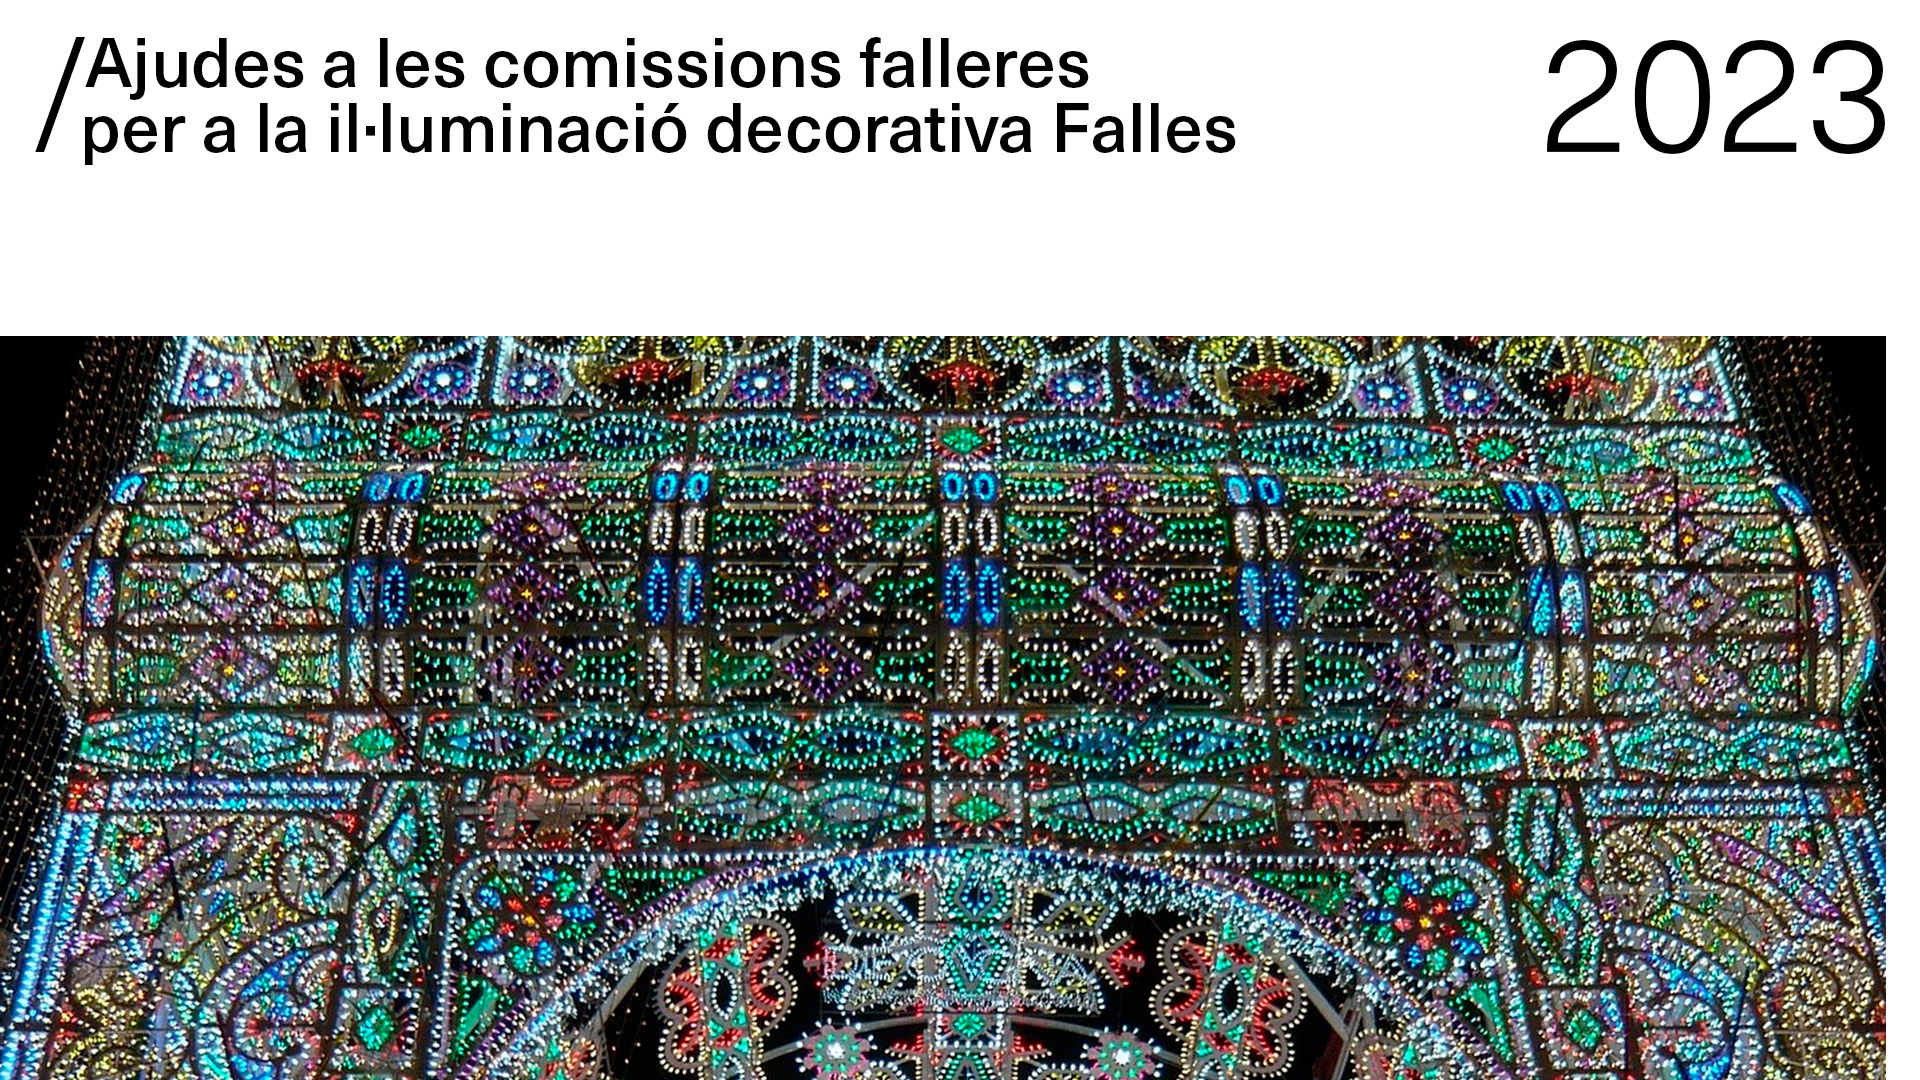 Ajudes a les comissions falleres per a la il·luminació decorativa Falles 2023